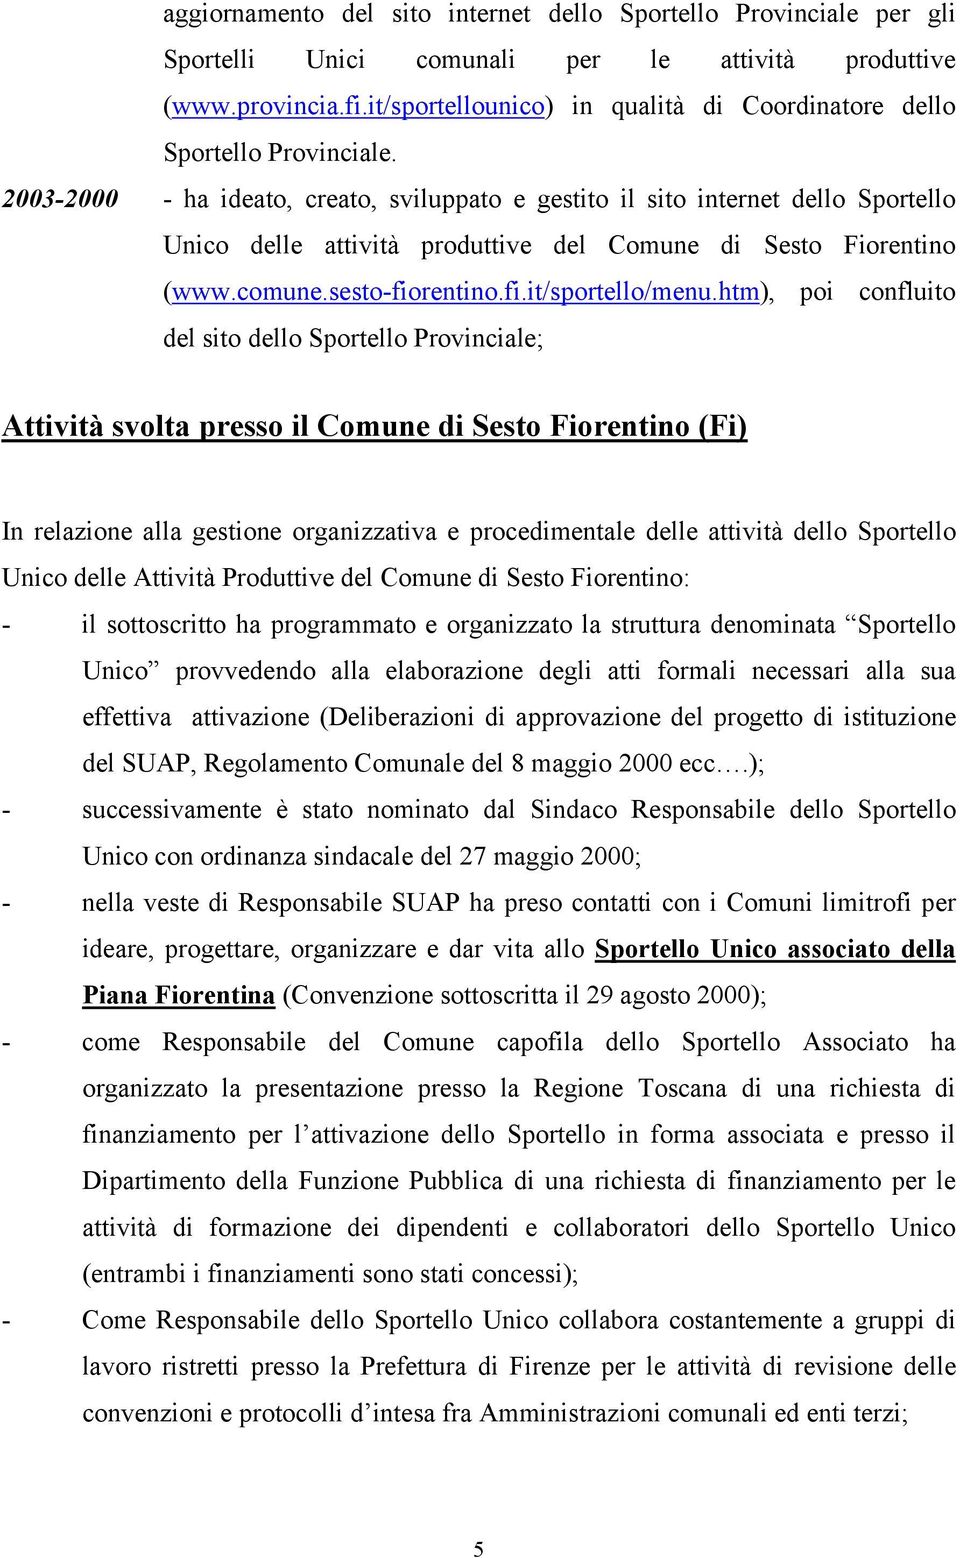 2003-2000 - ha ideato, creato, sviluppato e gestito il sito internet dello Sportello Unico delle attività produttive del Comune di Sesto Fiorentino (www.comune.sesto-fiorentino.fi.it/sportello/menu.